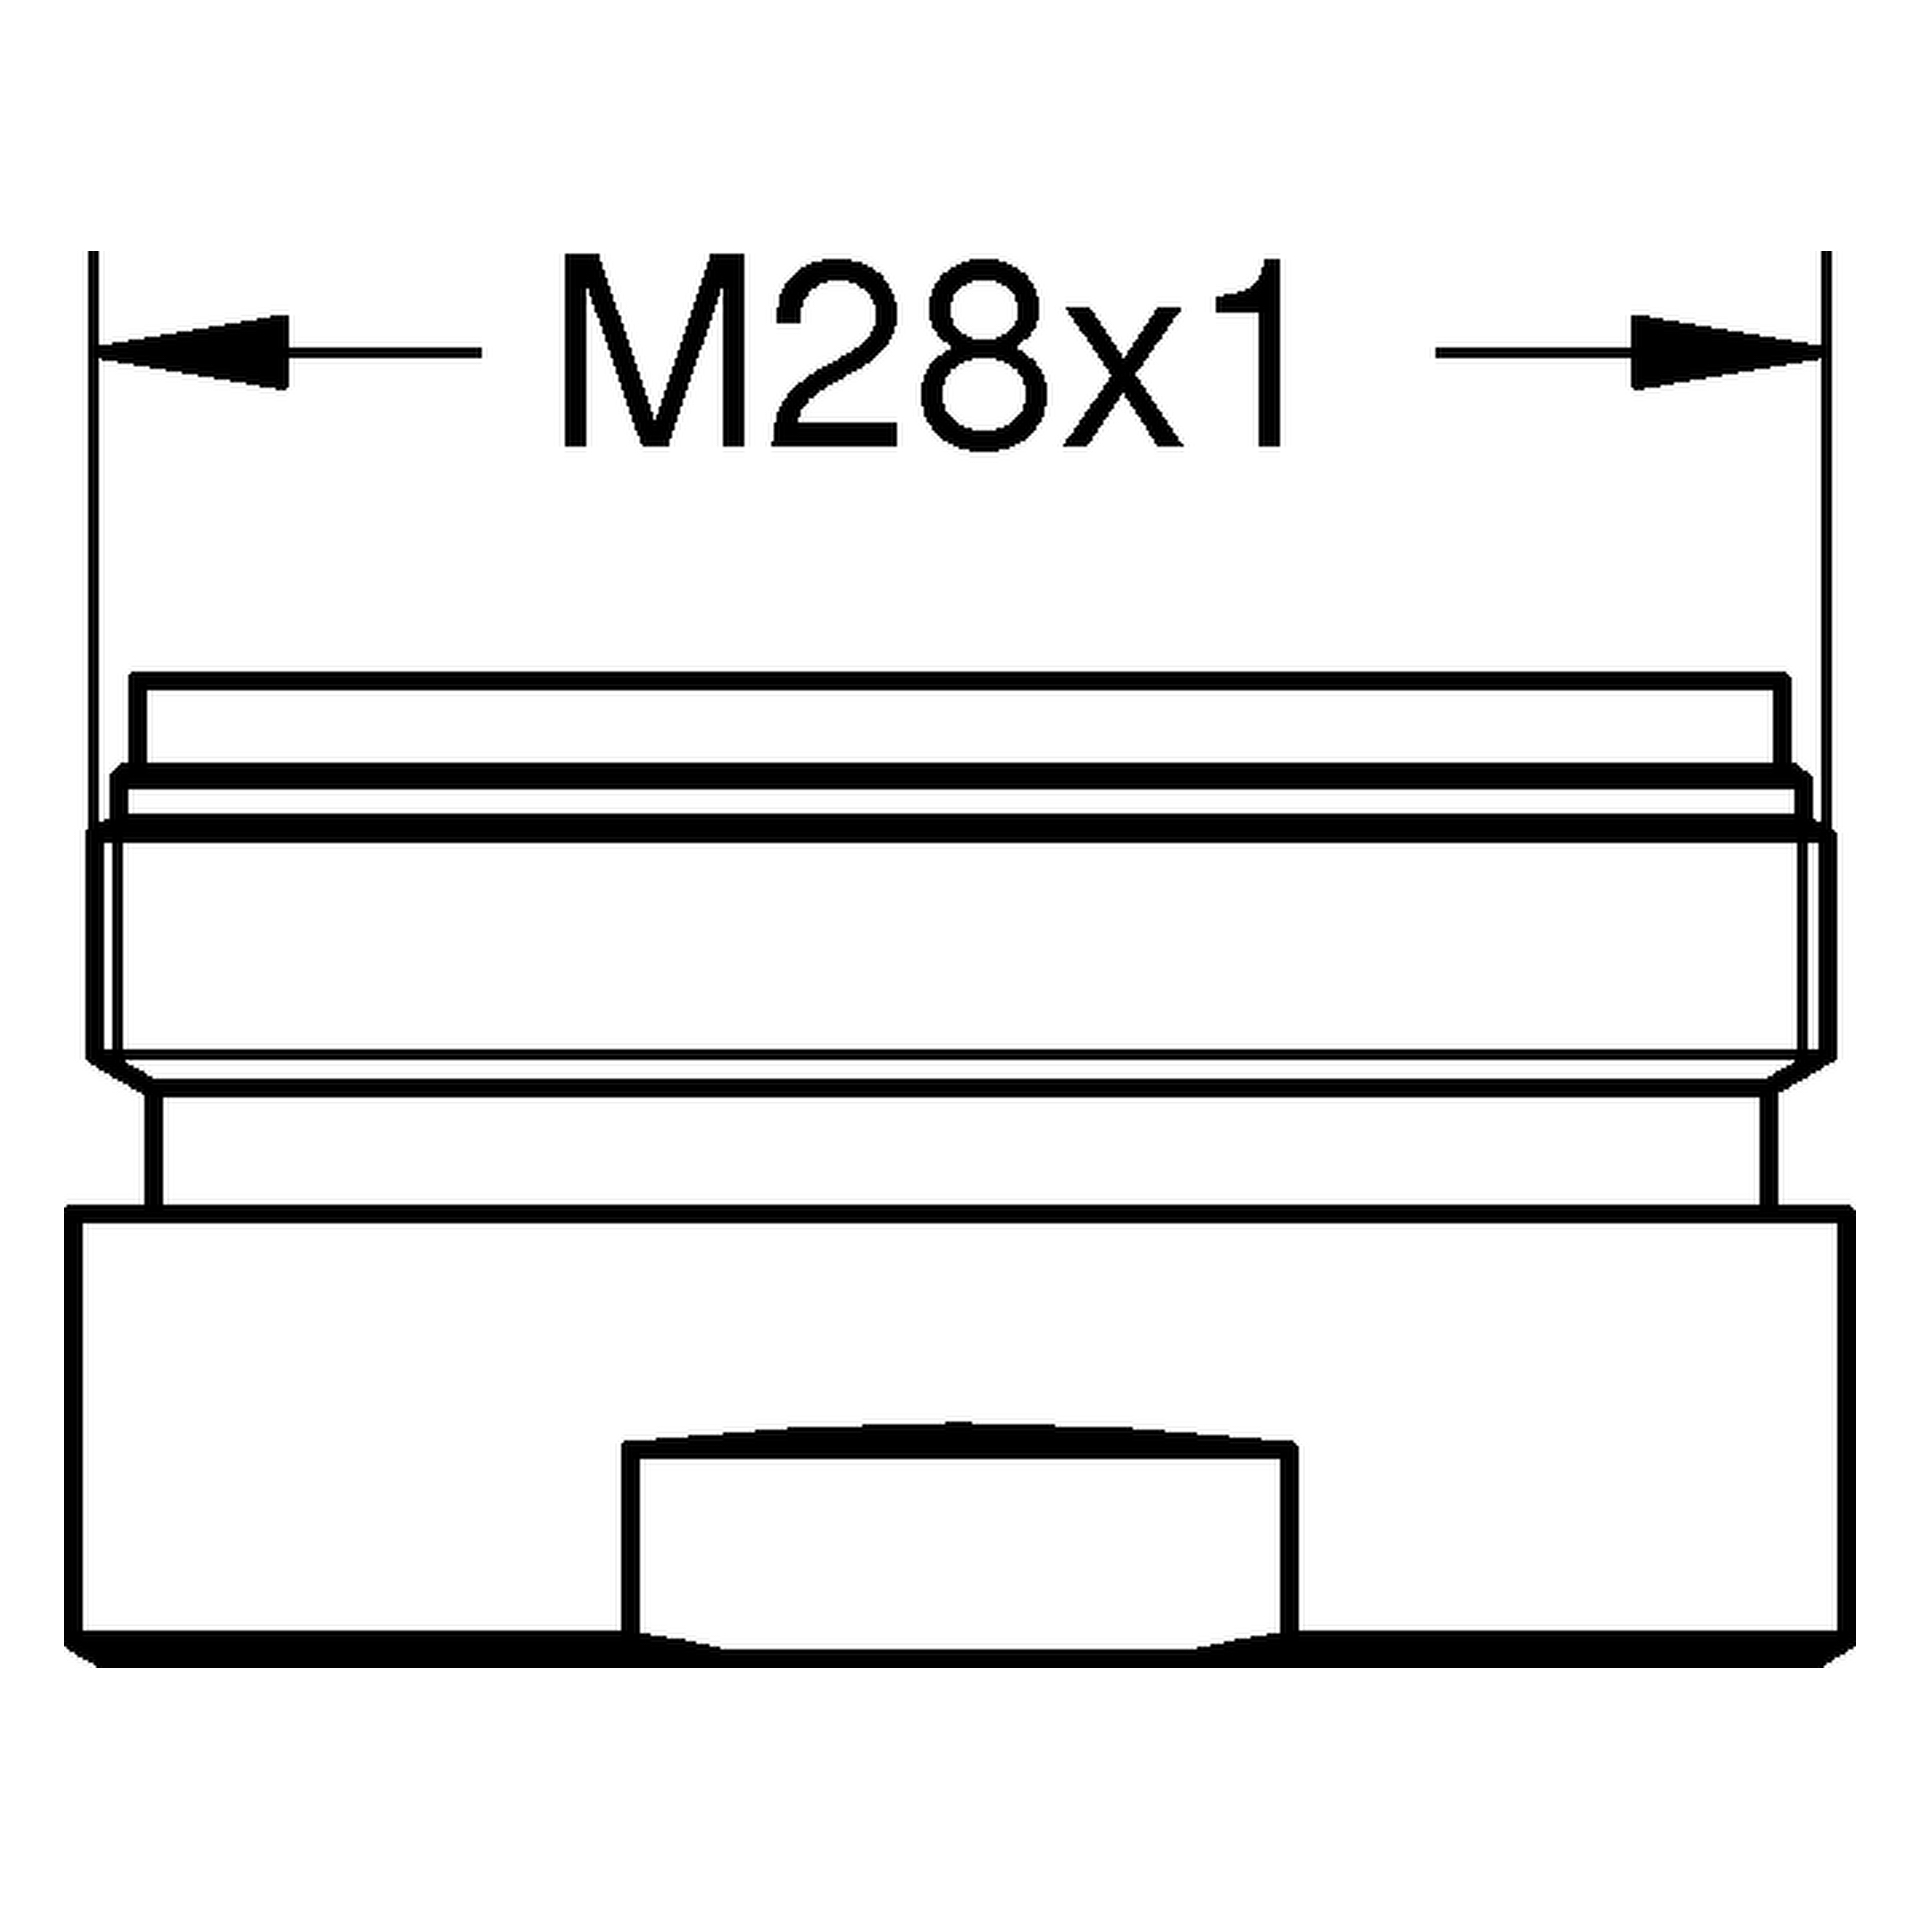 Mousseur 13263, für Red, Außengewinde M 28 × 1, 7,5 - 9,0 l/min bei 3 bar, Heißwasser-Strahlregler, chrom